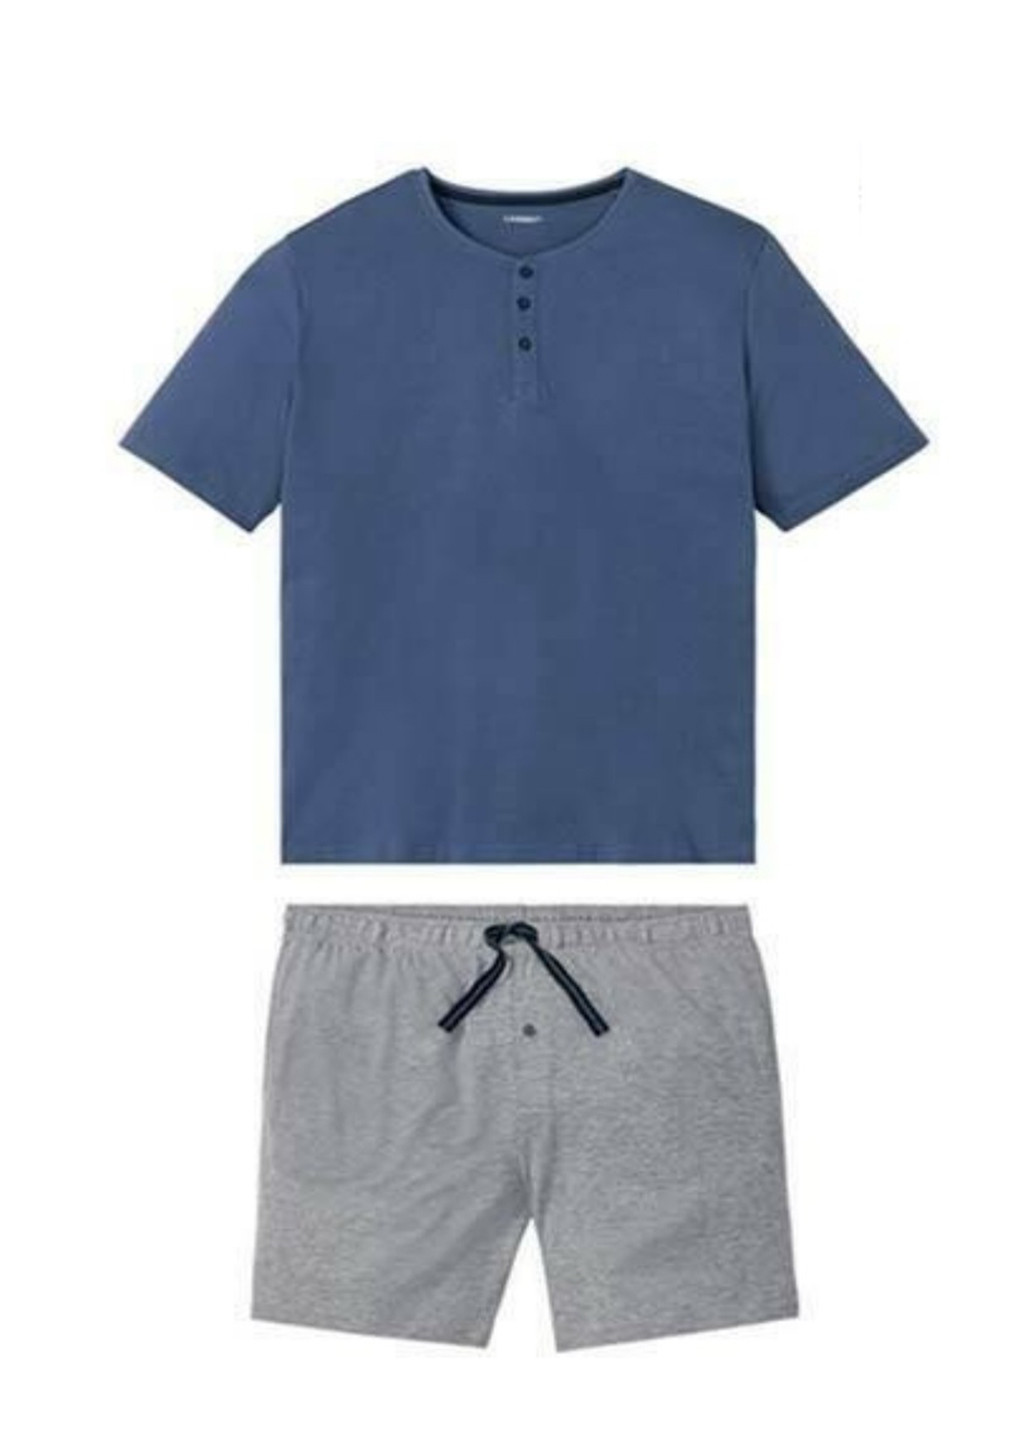 Піжама (футболка, шорти) Livergy футболка + шорти меланж сіро-синя домашня трикотаж, бавовна